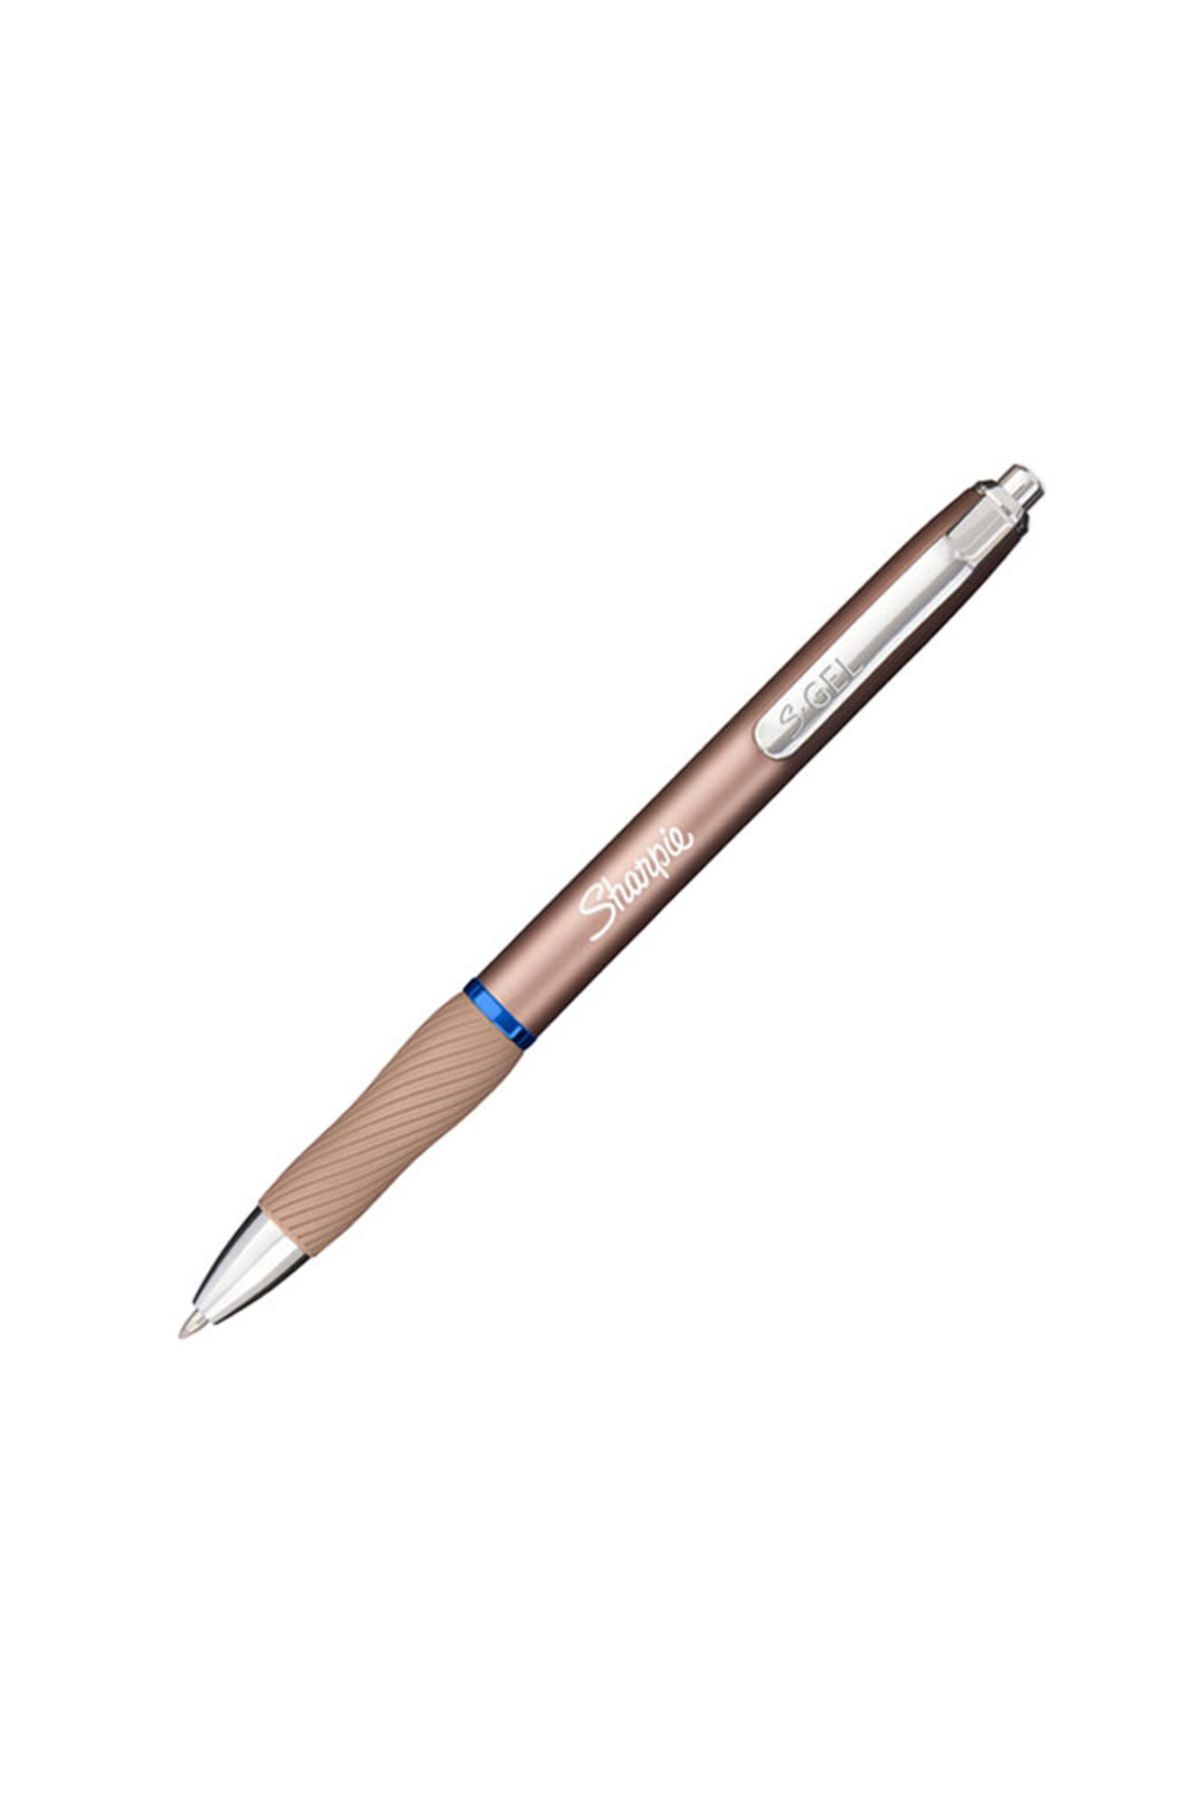 Sharpie S-gel Rose Gold Gövde Jel Mürekkepli Kalem 0.7mm Mavi